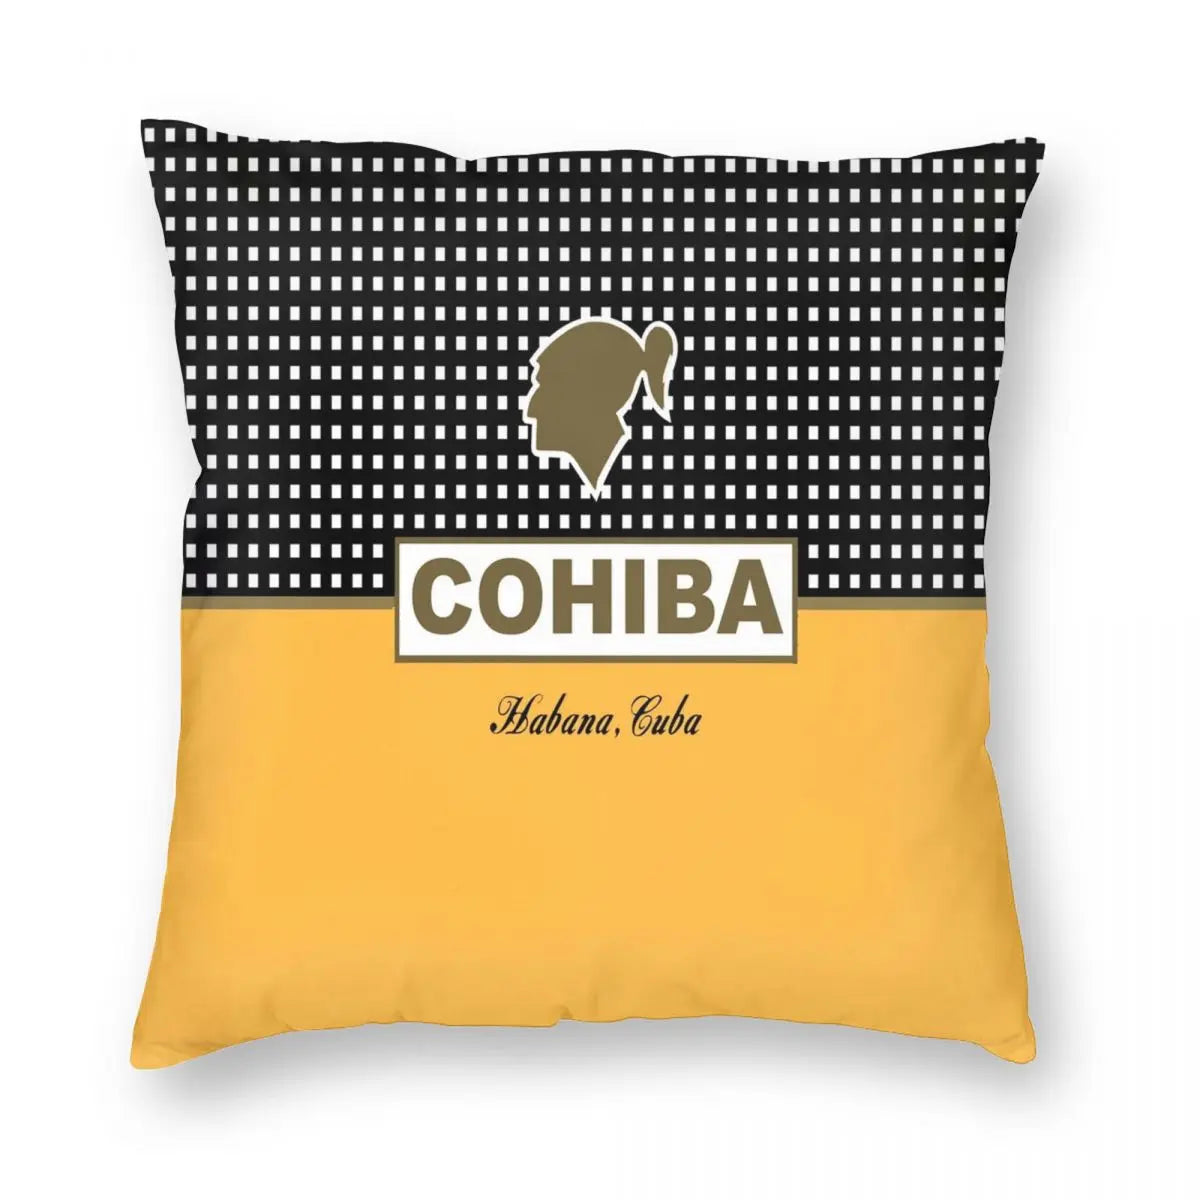 ALDO Linens & Bedding > Bedding > Pillowcases & Shams Cohiba Habana Cuba Cigar Style Pillowcases Yellow Poliester